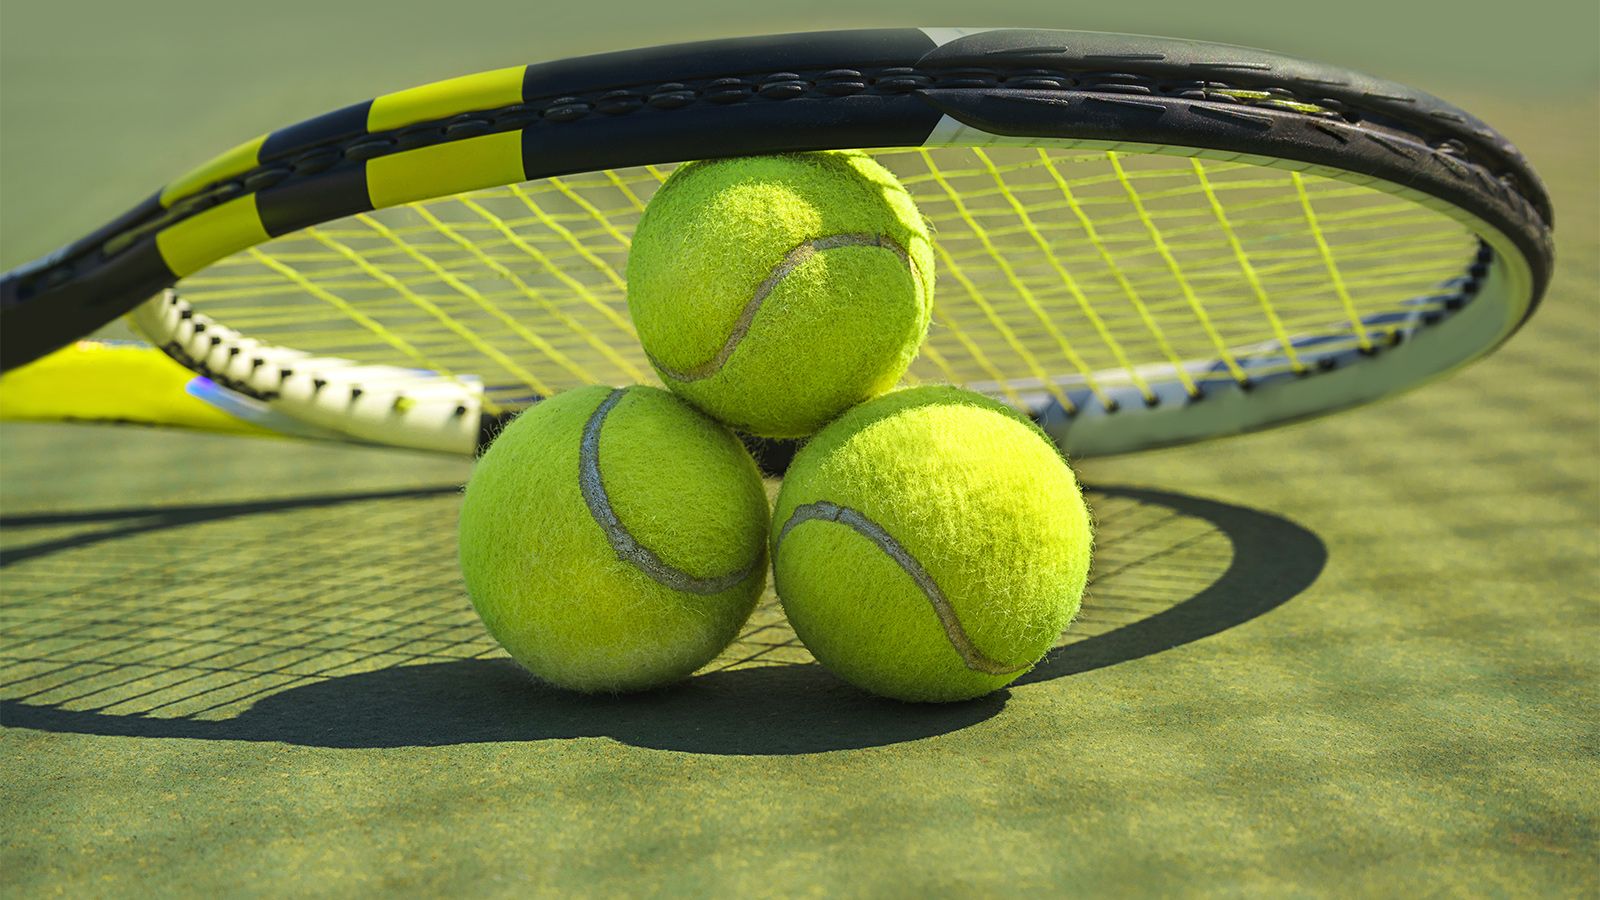 Теннисный судья из Словении дисквалифицирован на 10 лет за ставки